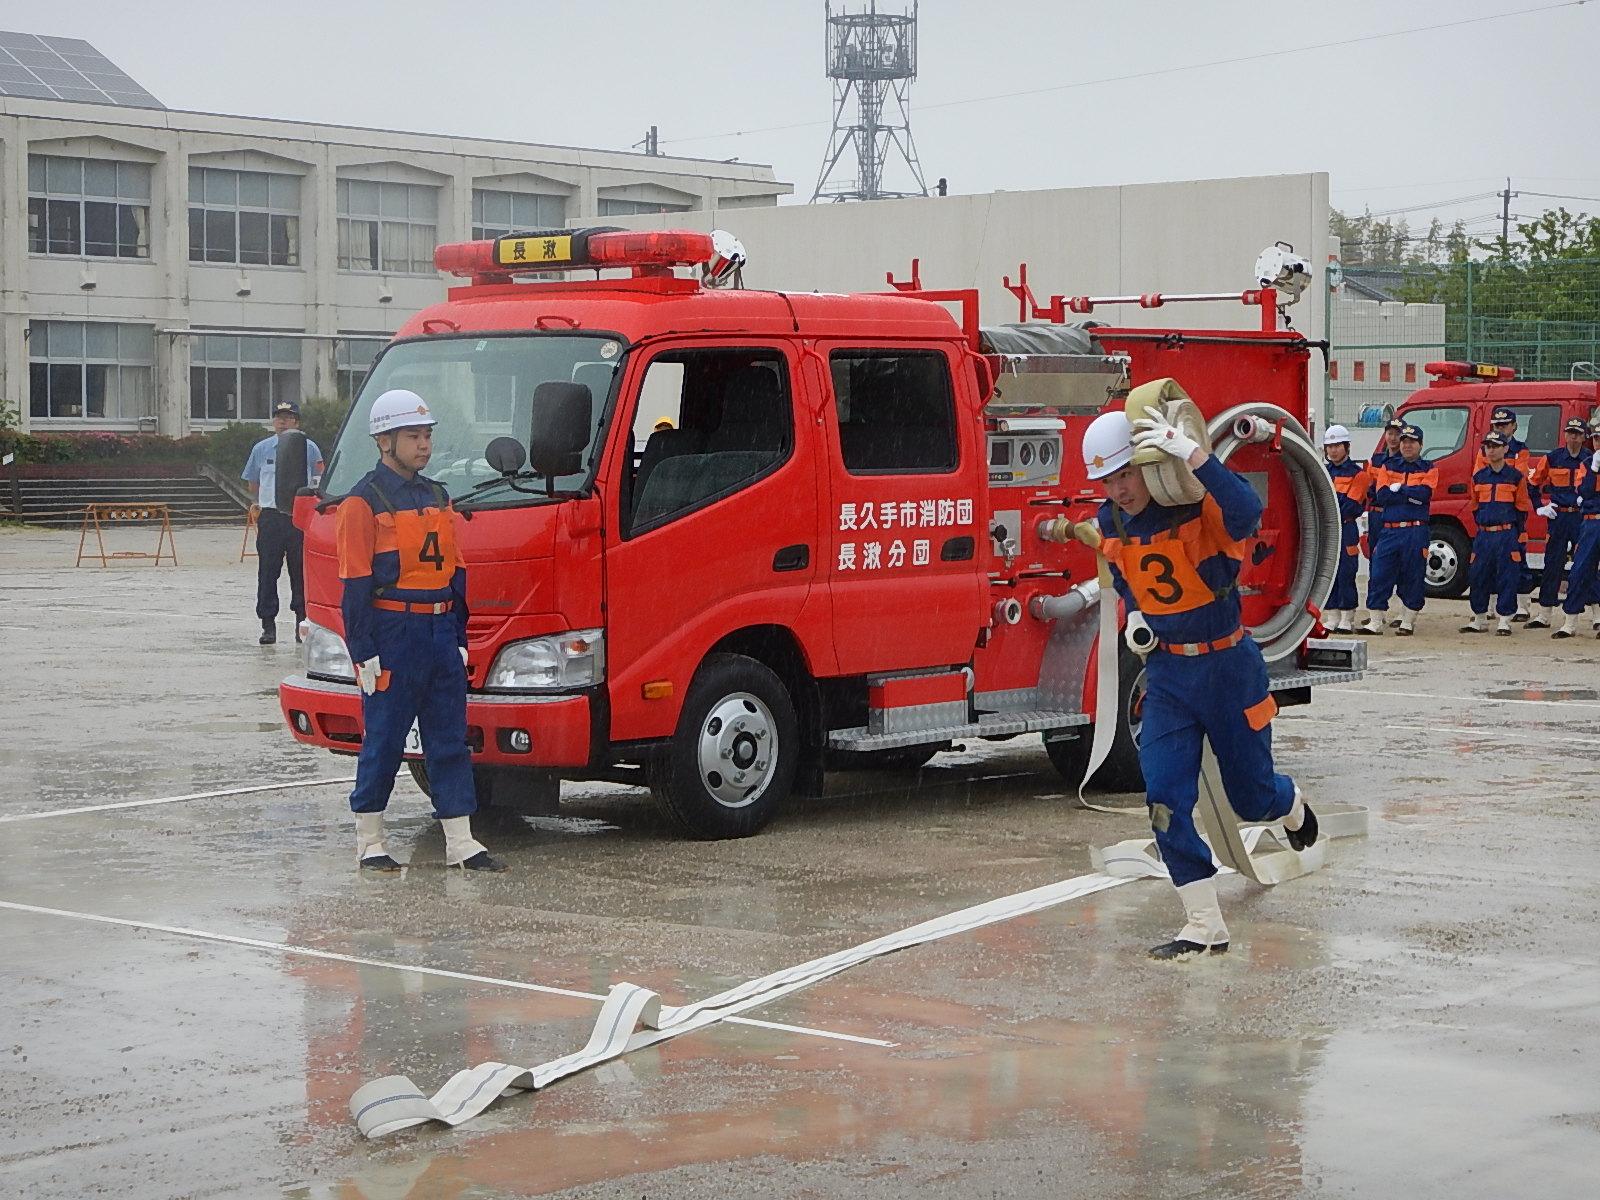 雨の降るグラウンドで消防団員が消防車両のホース巻をしている様子をもう一人の消防団員が見ている写真